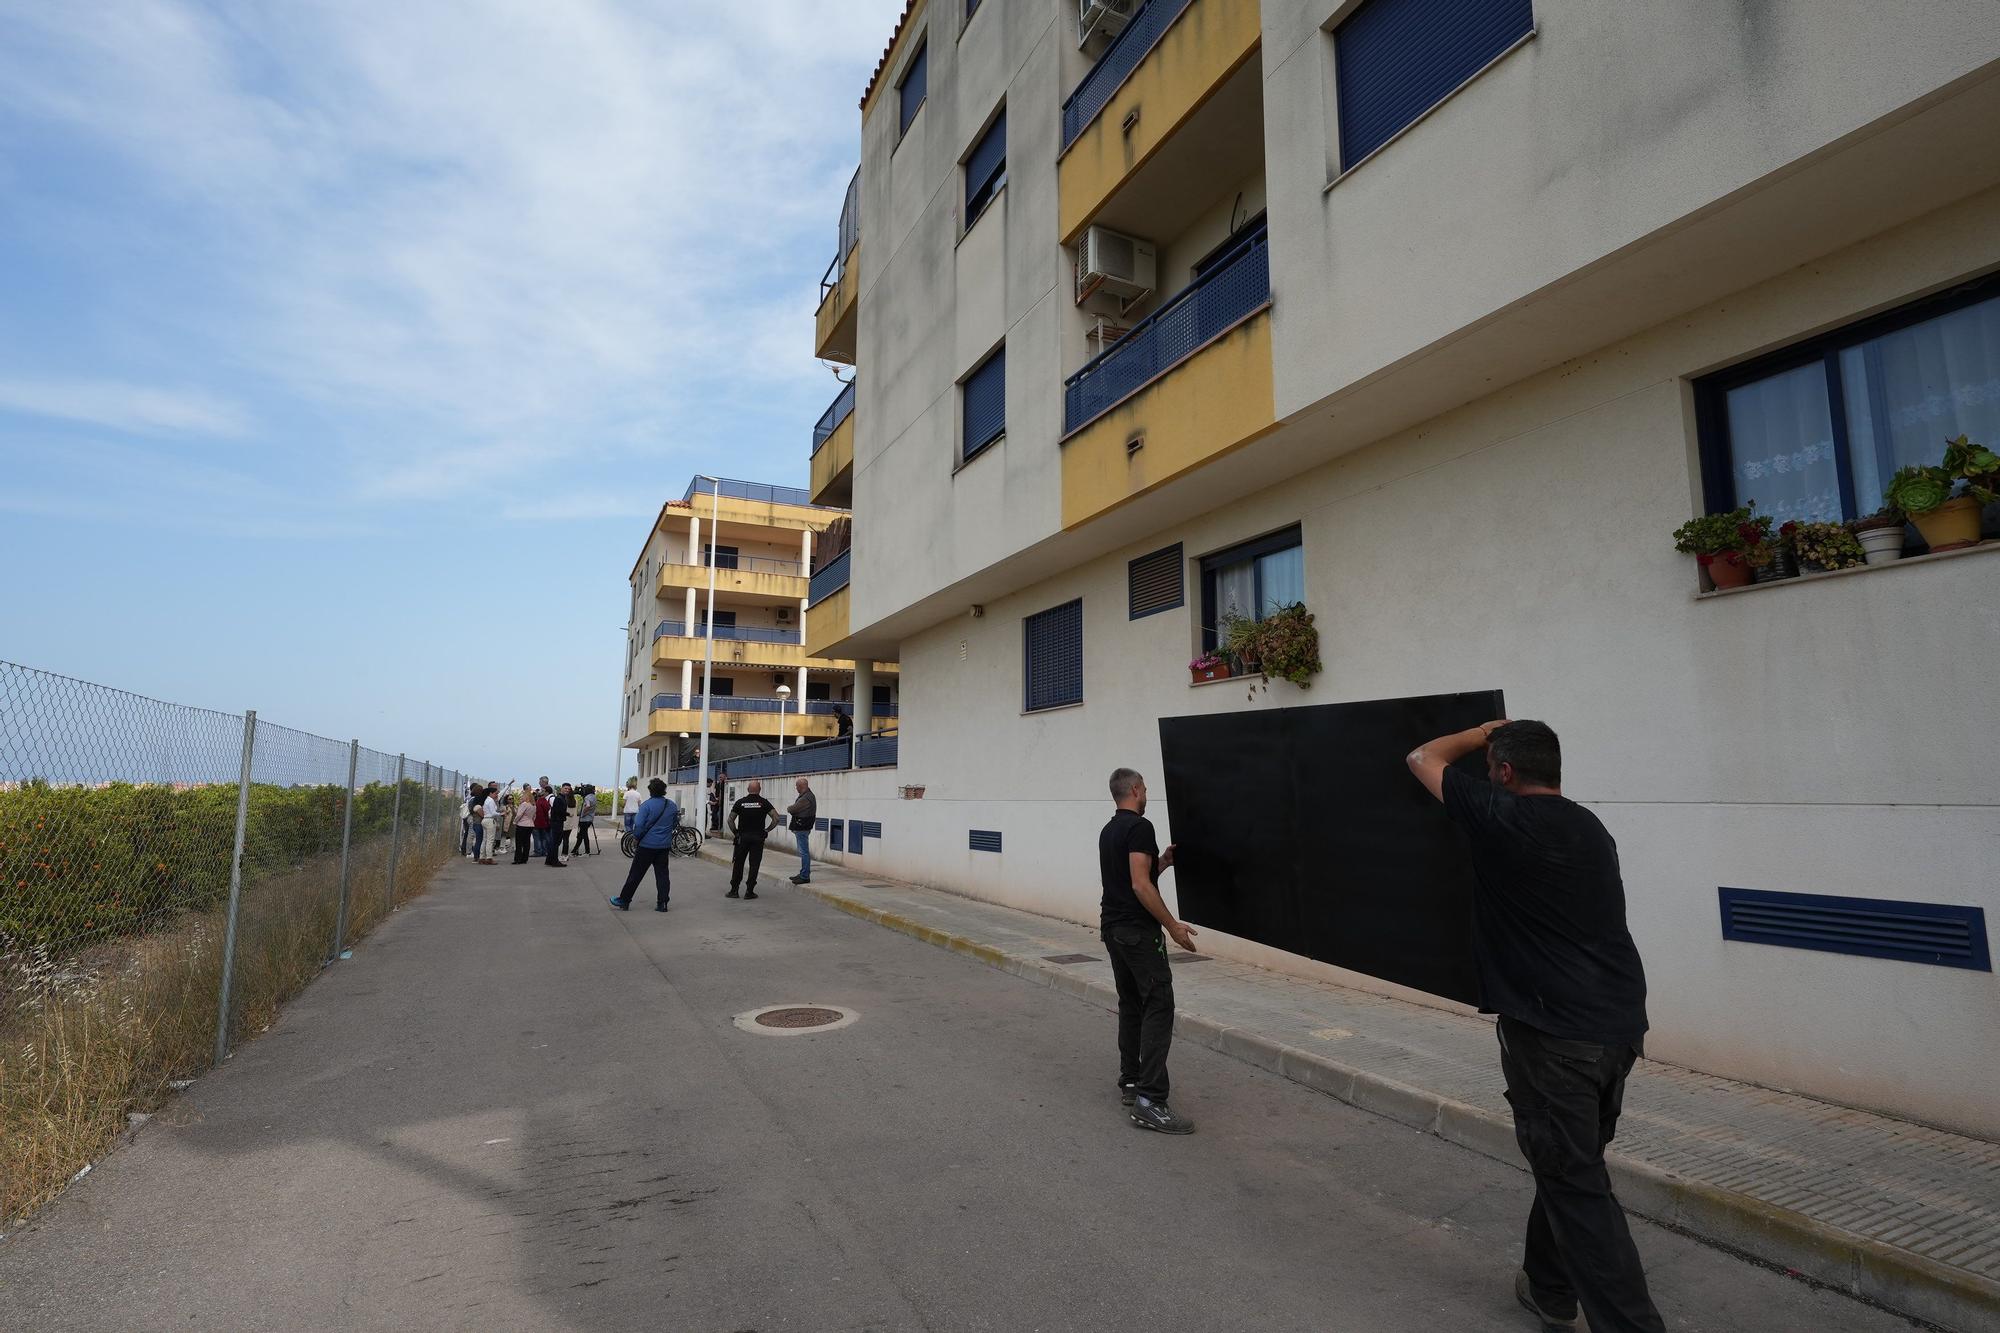 Fotos del operativo para desalojar los okupas de un bloque de pisos en Moncofa